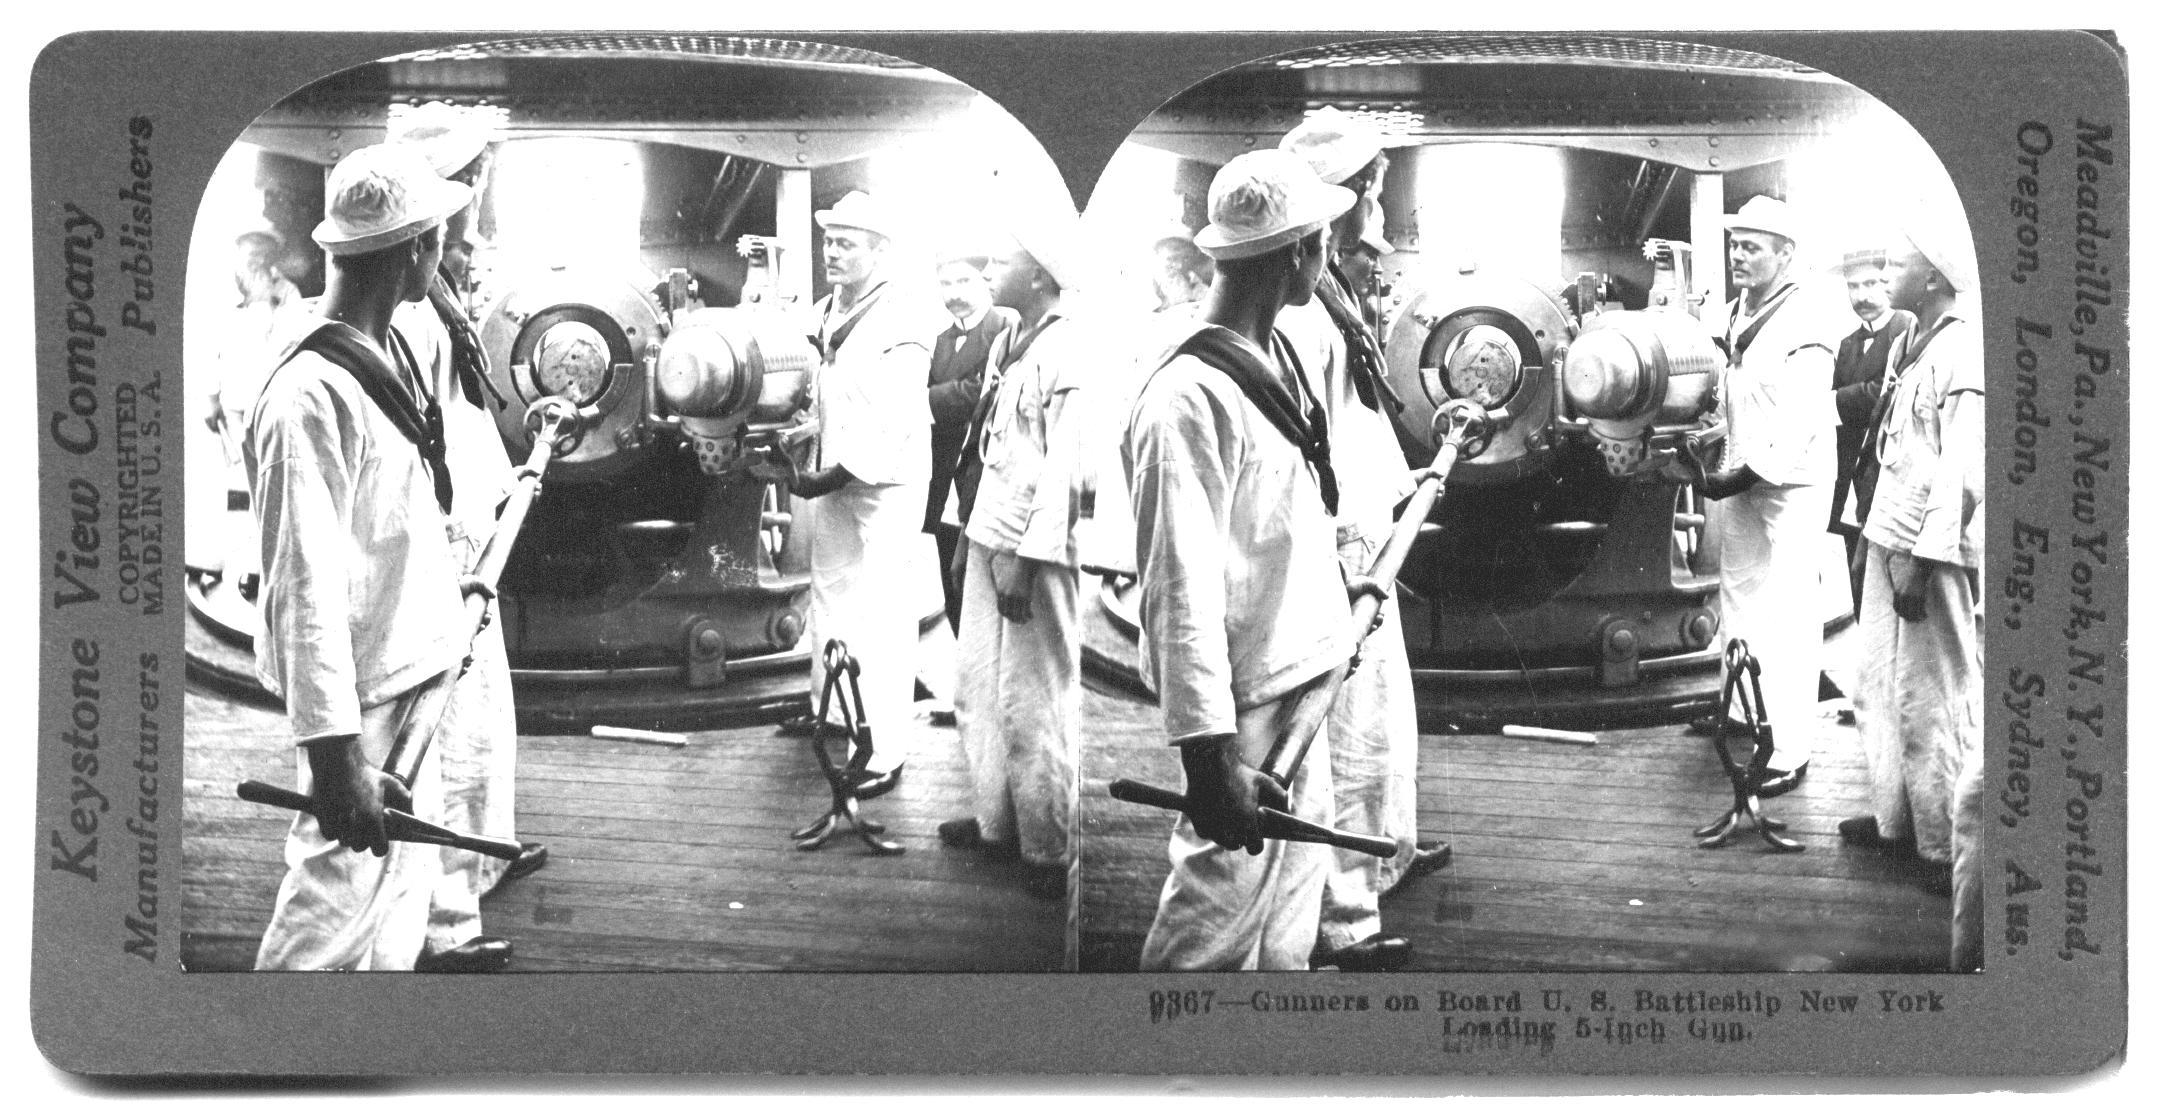 Gunners on Board U. S. Battleship New York Loading 5-Inch Gun